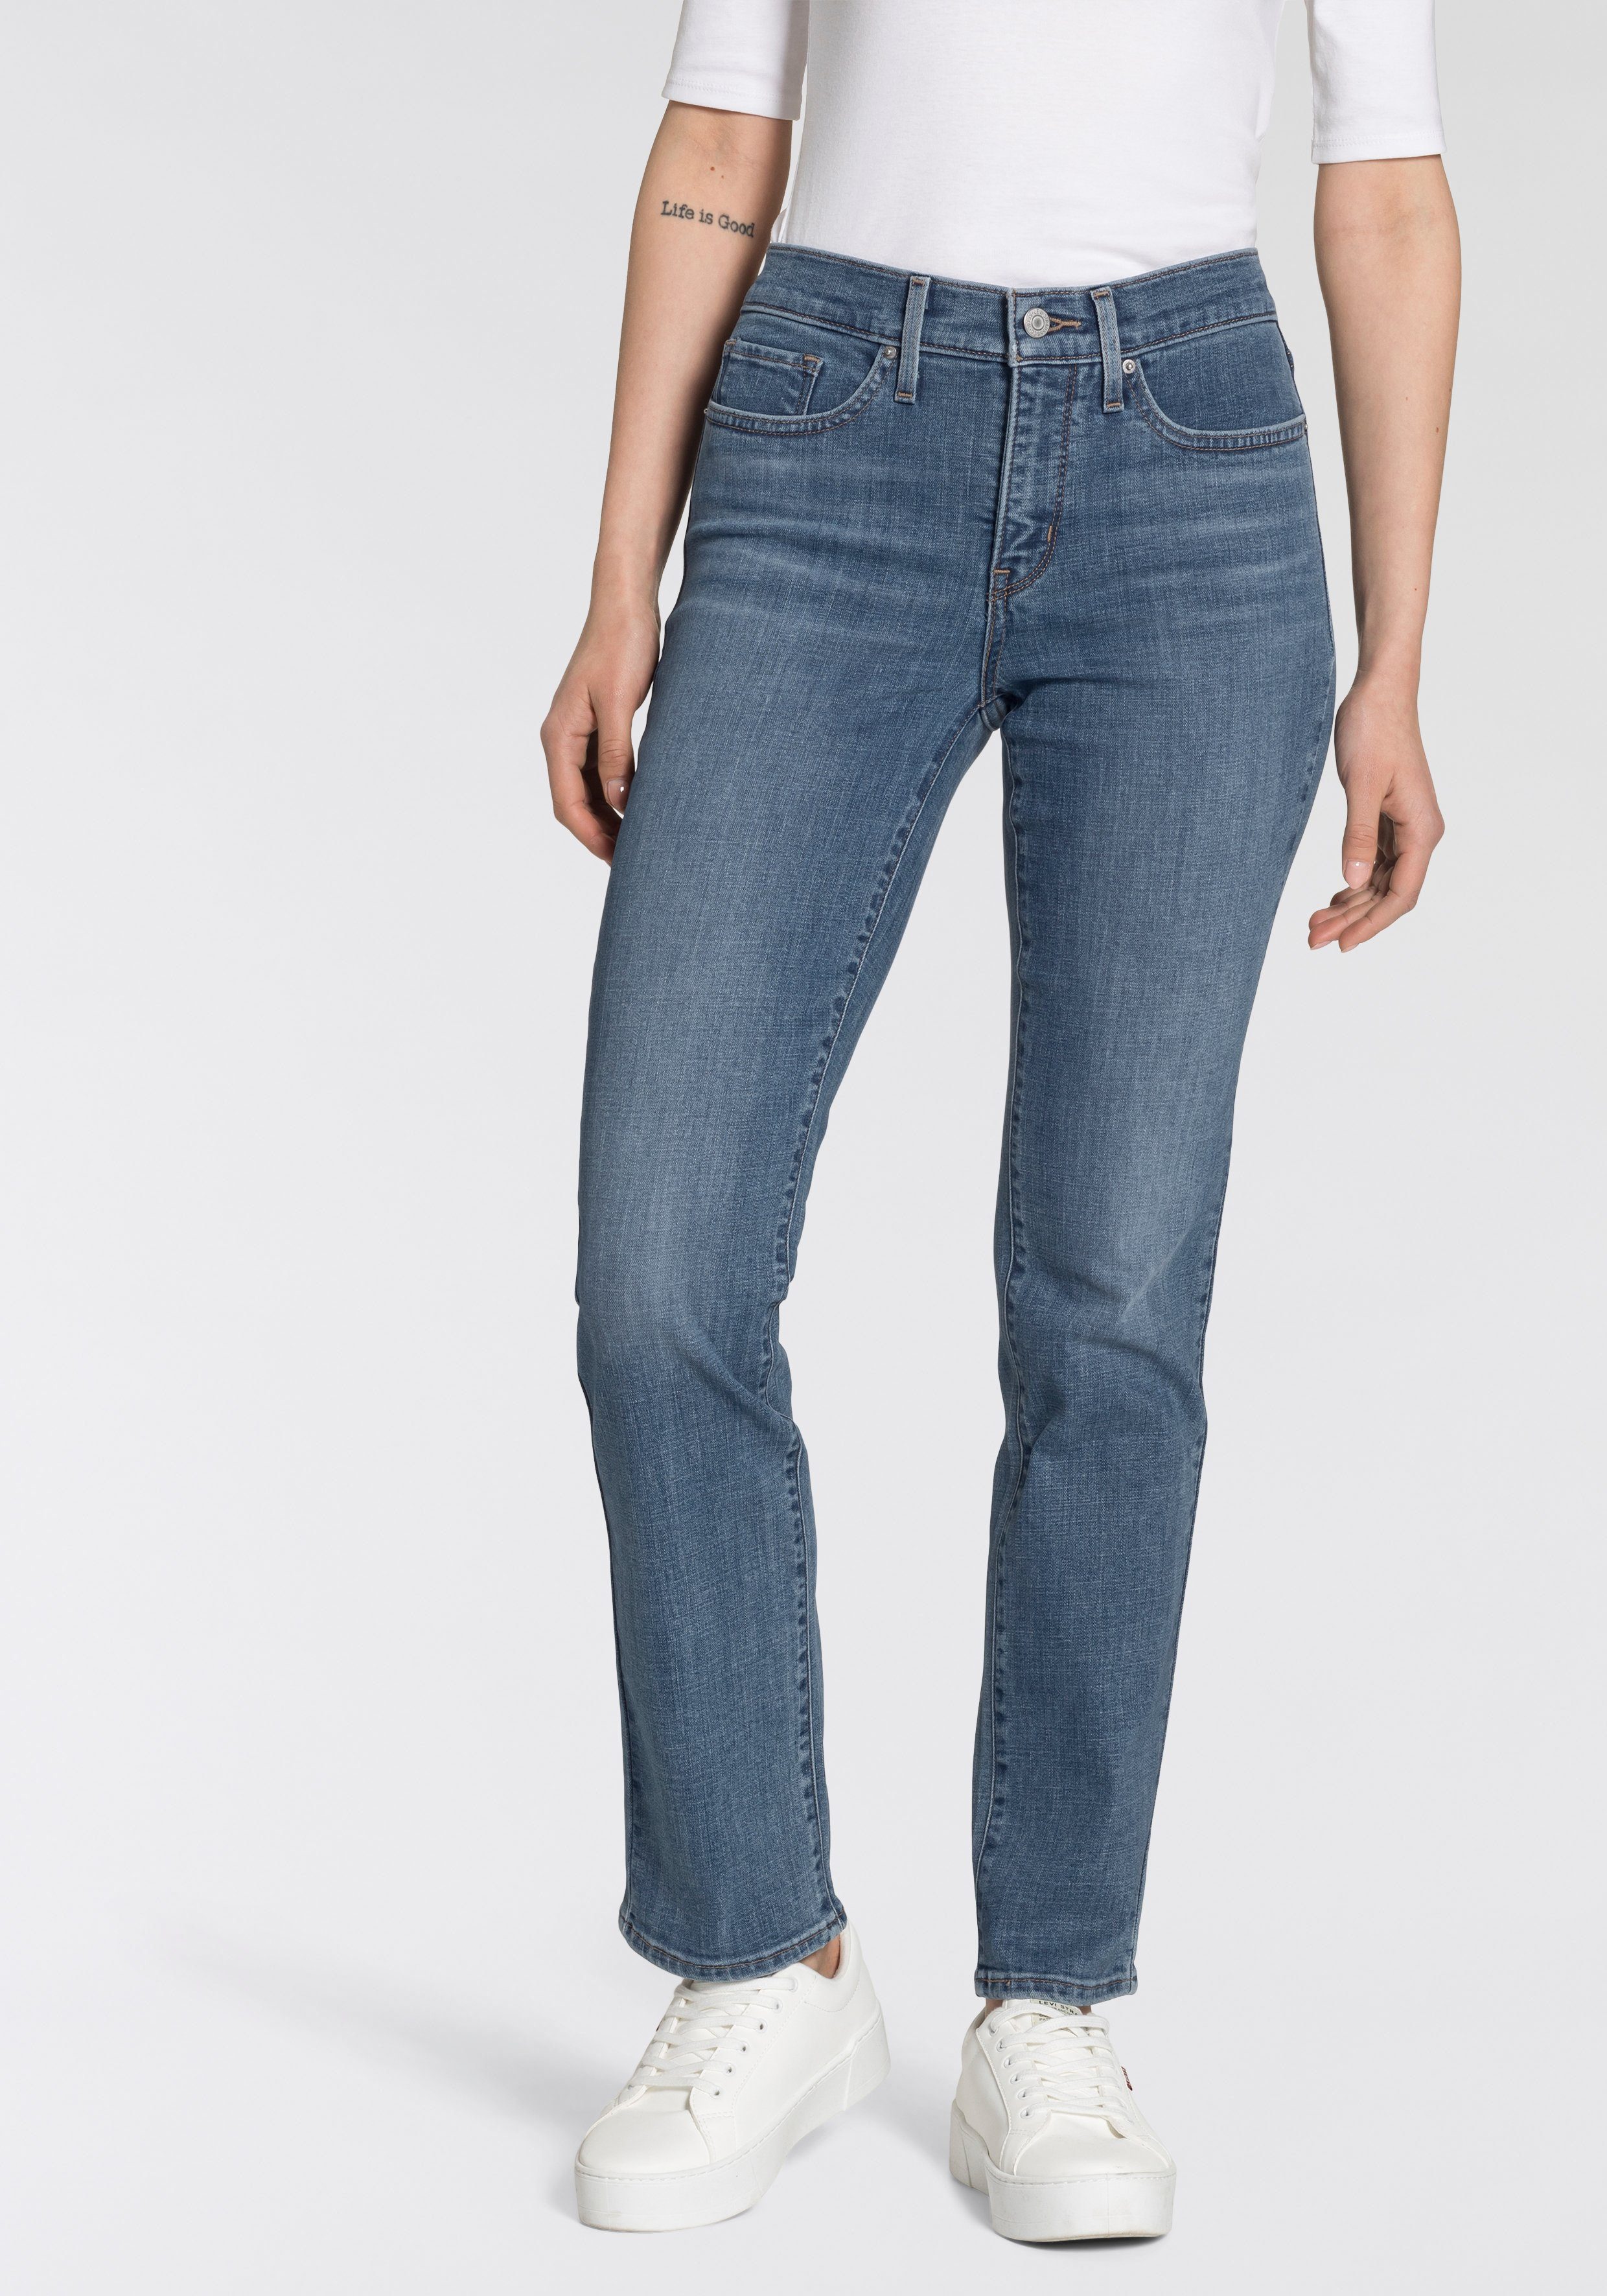 Günstige Levi's Jeans online kaufen » Reduziert im SALE | OTTO